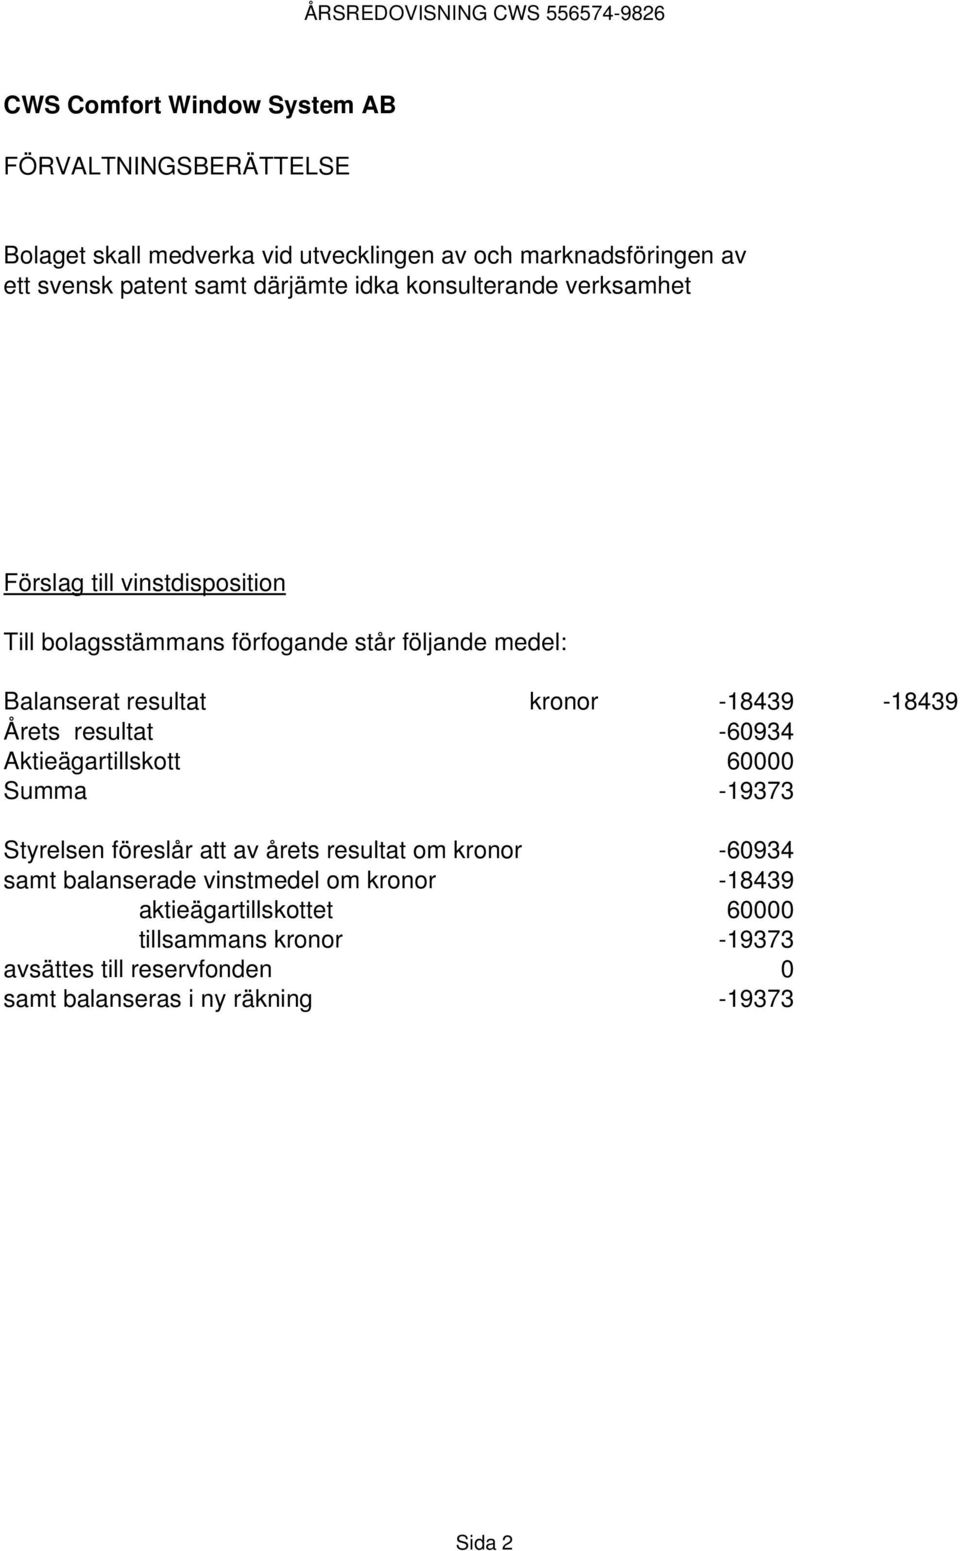 resultat -60934 Aktieägartillskott 60000 Summa -19373 Styrelsen föreslår att av årets resultat om kronor -60934 samt balanserade vinstmedel